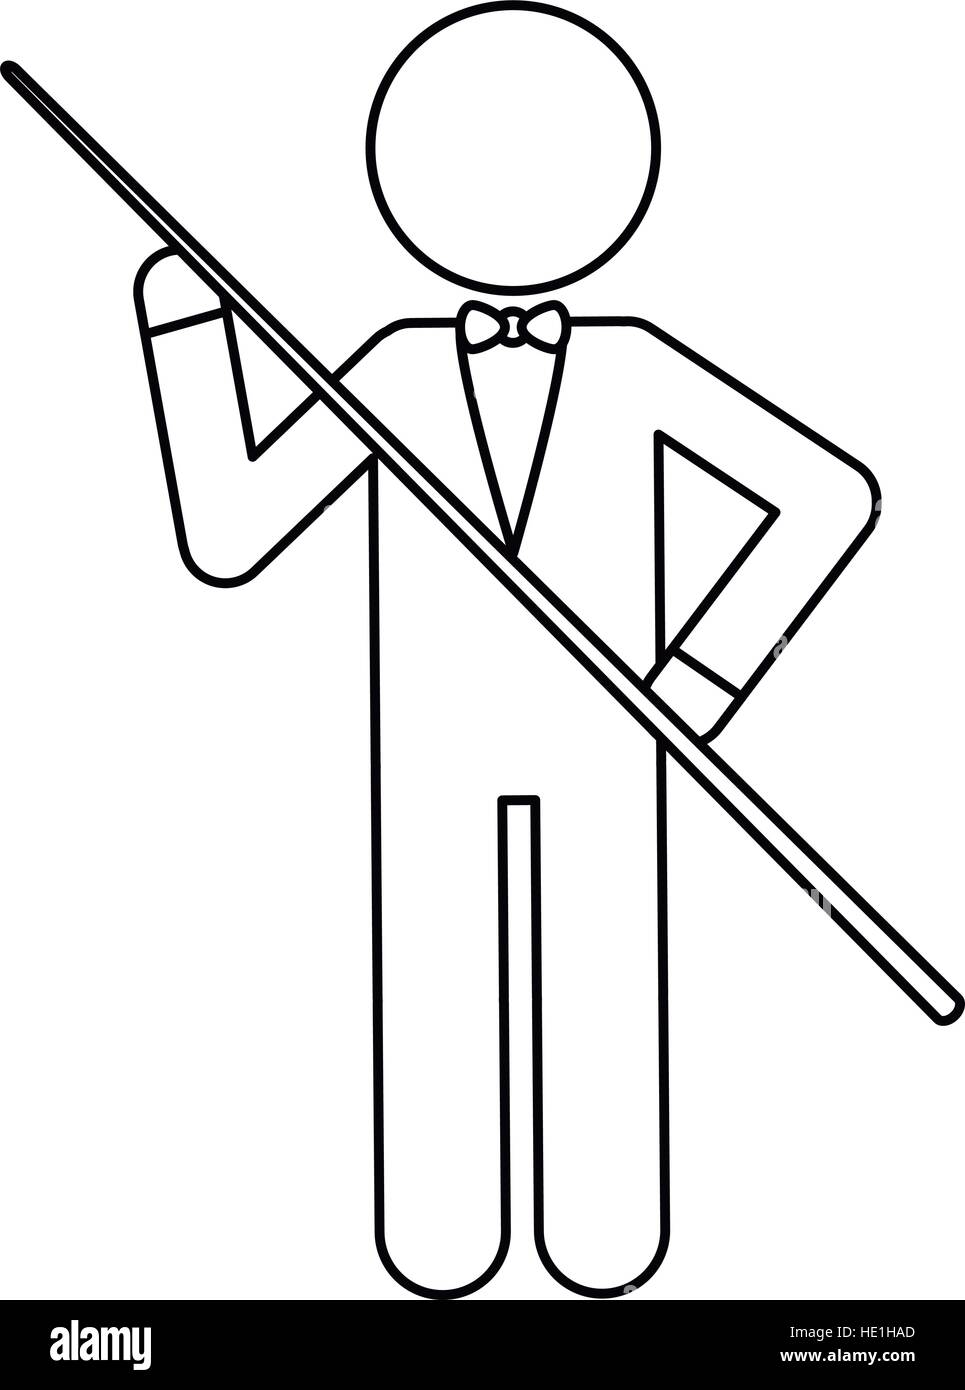 Personaggio giocatore di biliardo ouline di prua Illustrazione Vettoriale